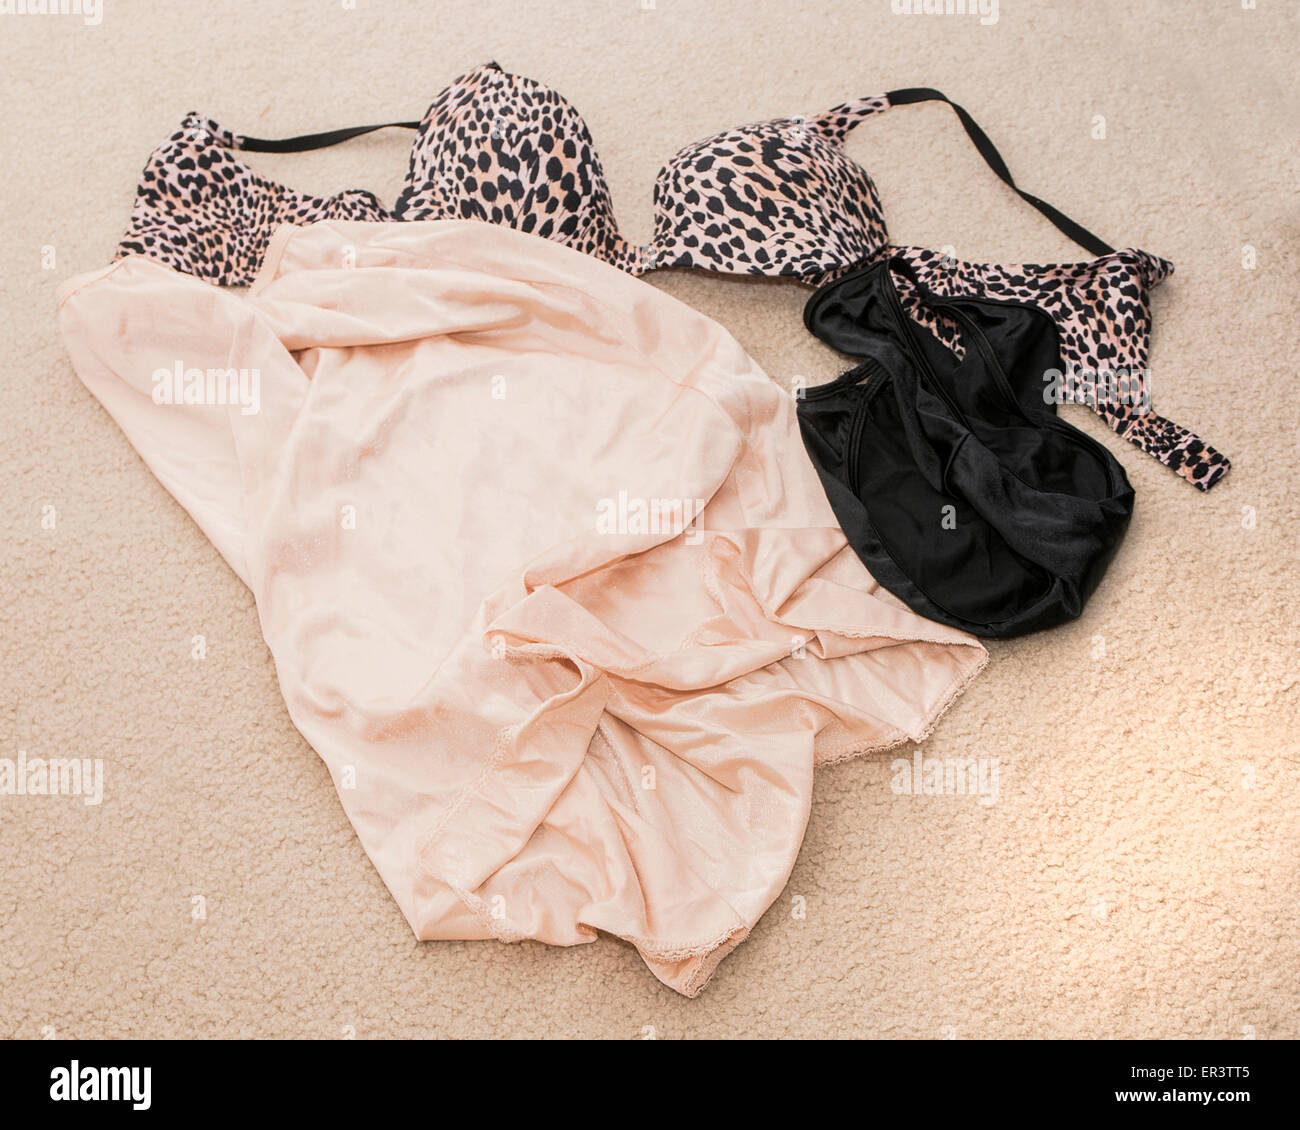 Un soutien-gorge, String, slip et culotte noire nue, étendue sur le sol  Photo Stock - Alamy